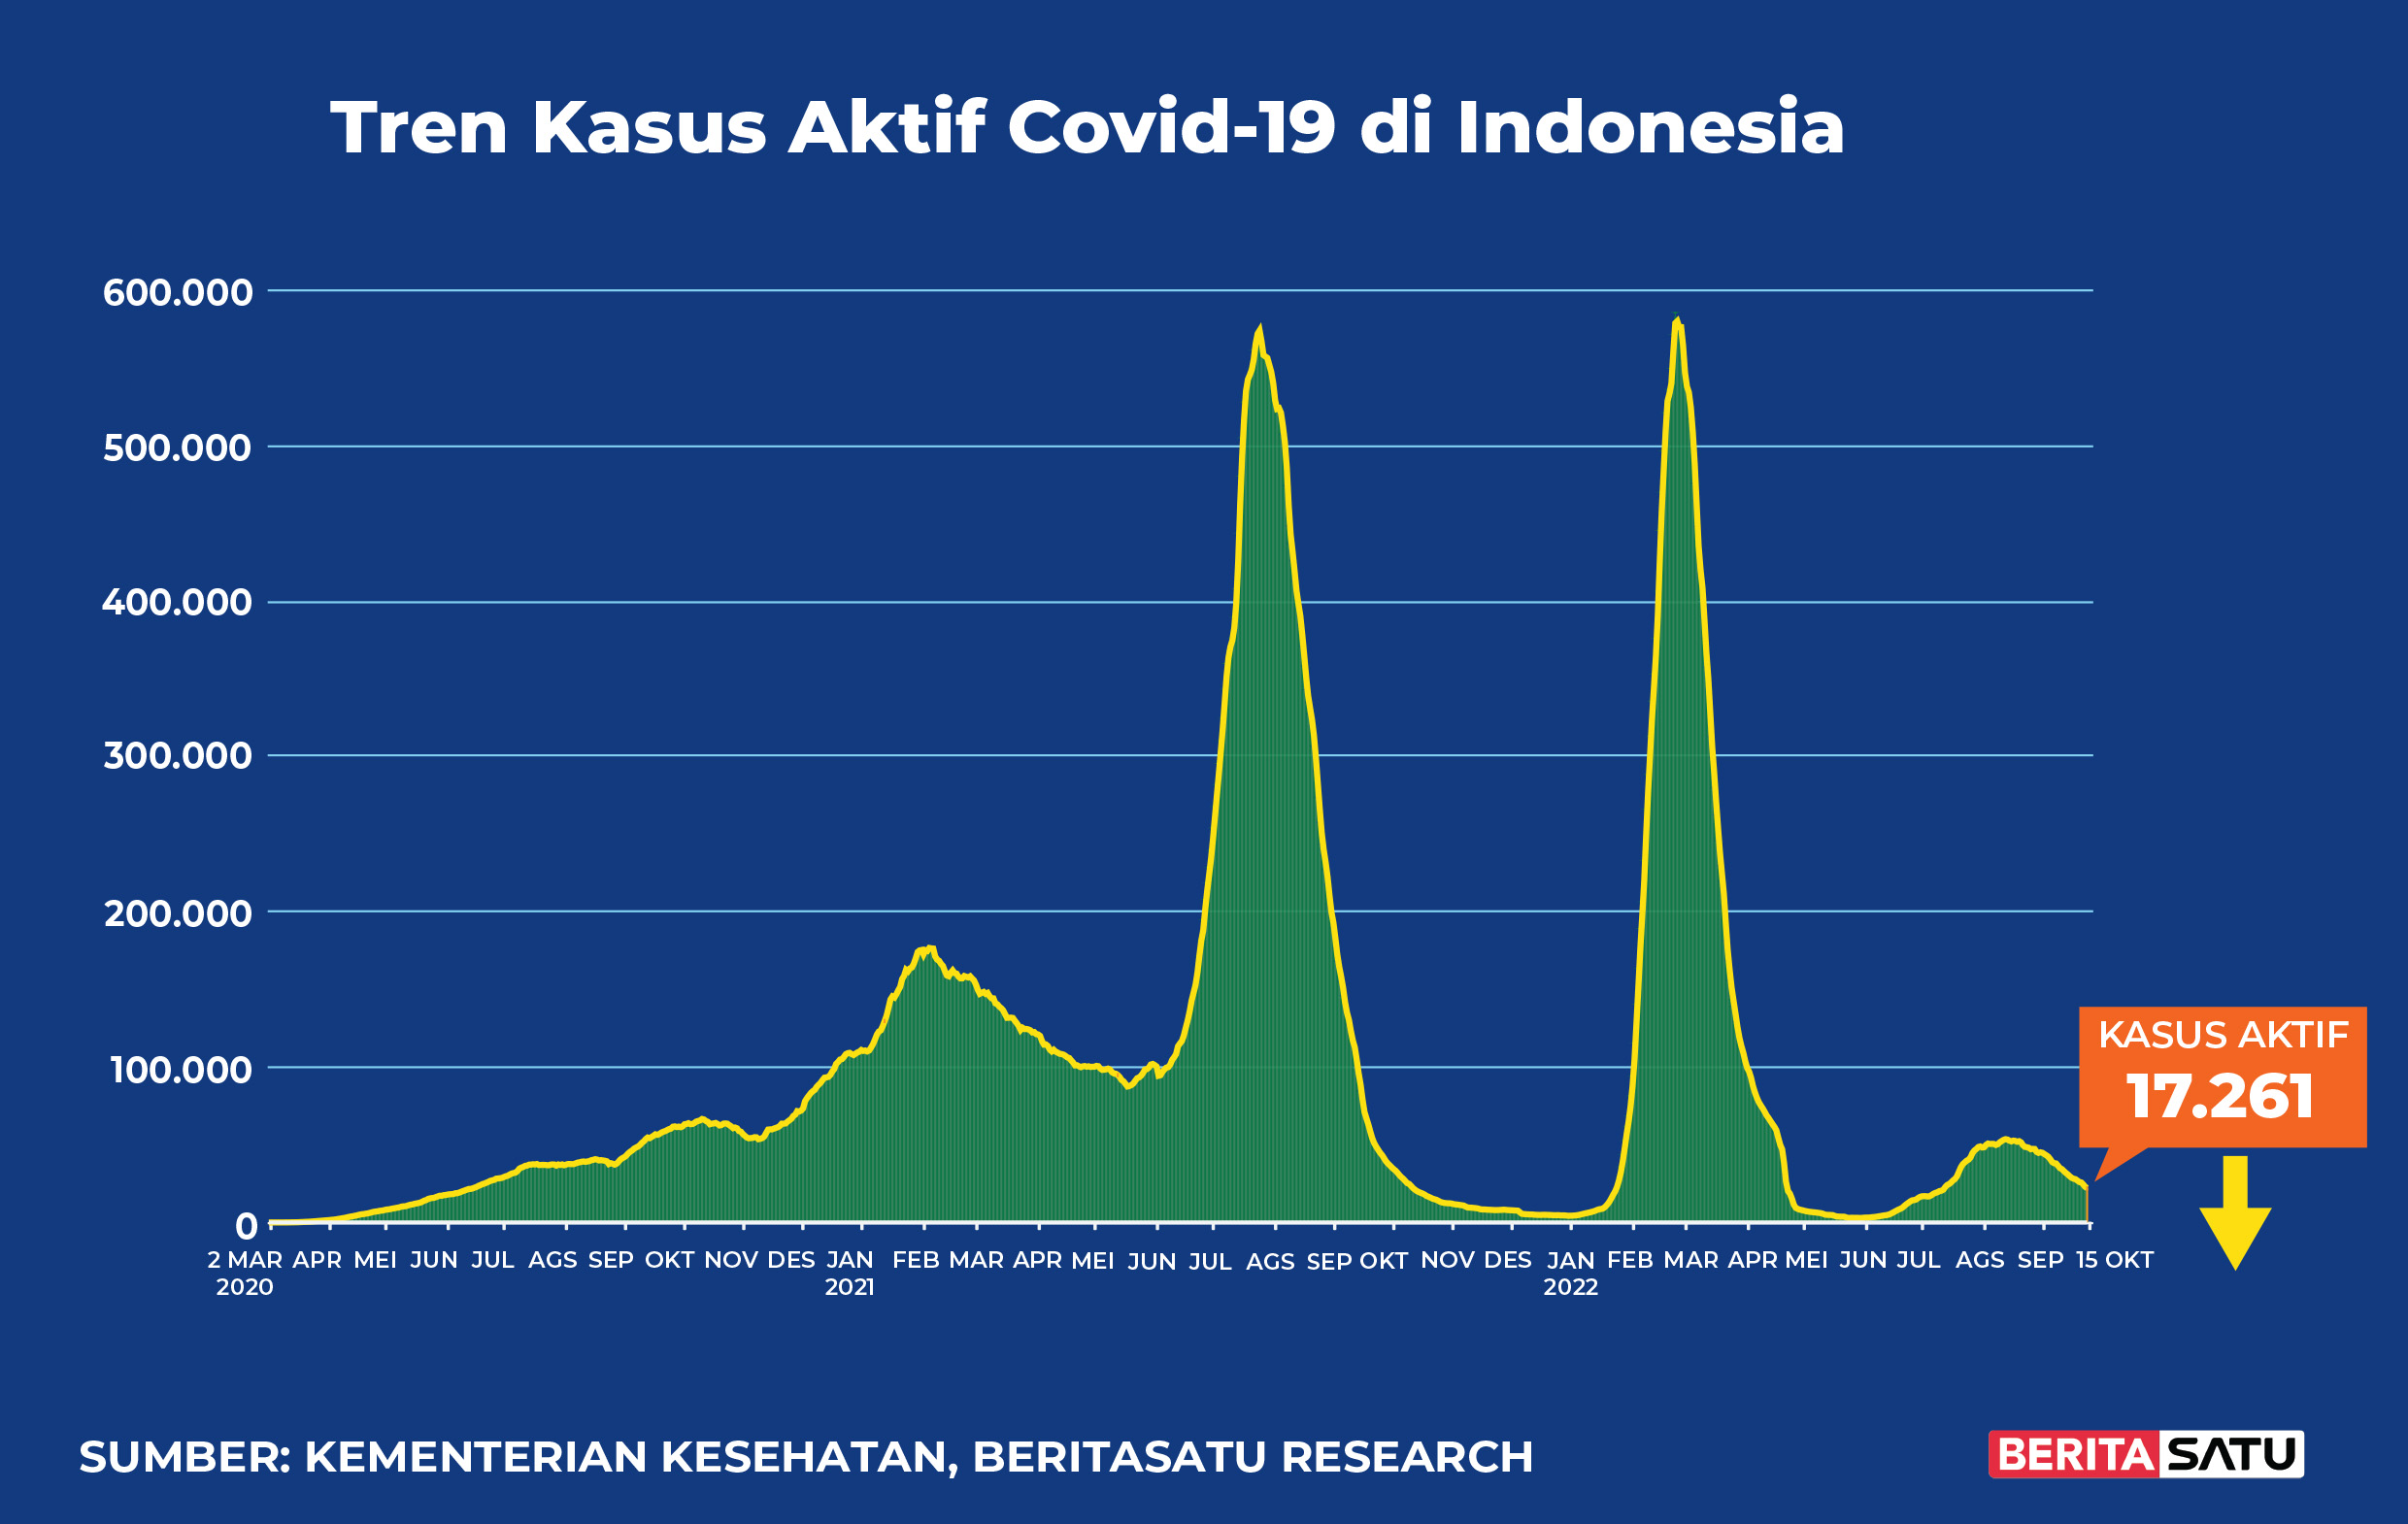 Kasus Aktif Covid-19 di Indonesia sampai 15 Oktober 2022